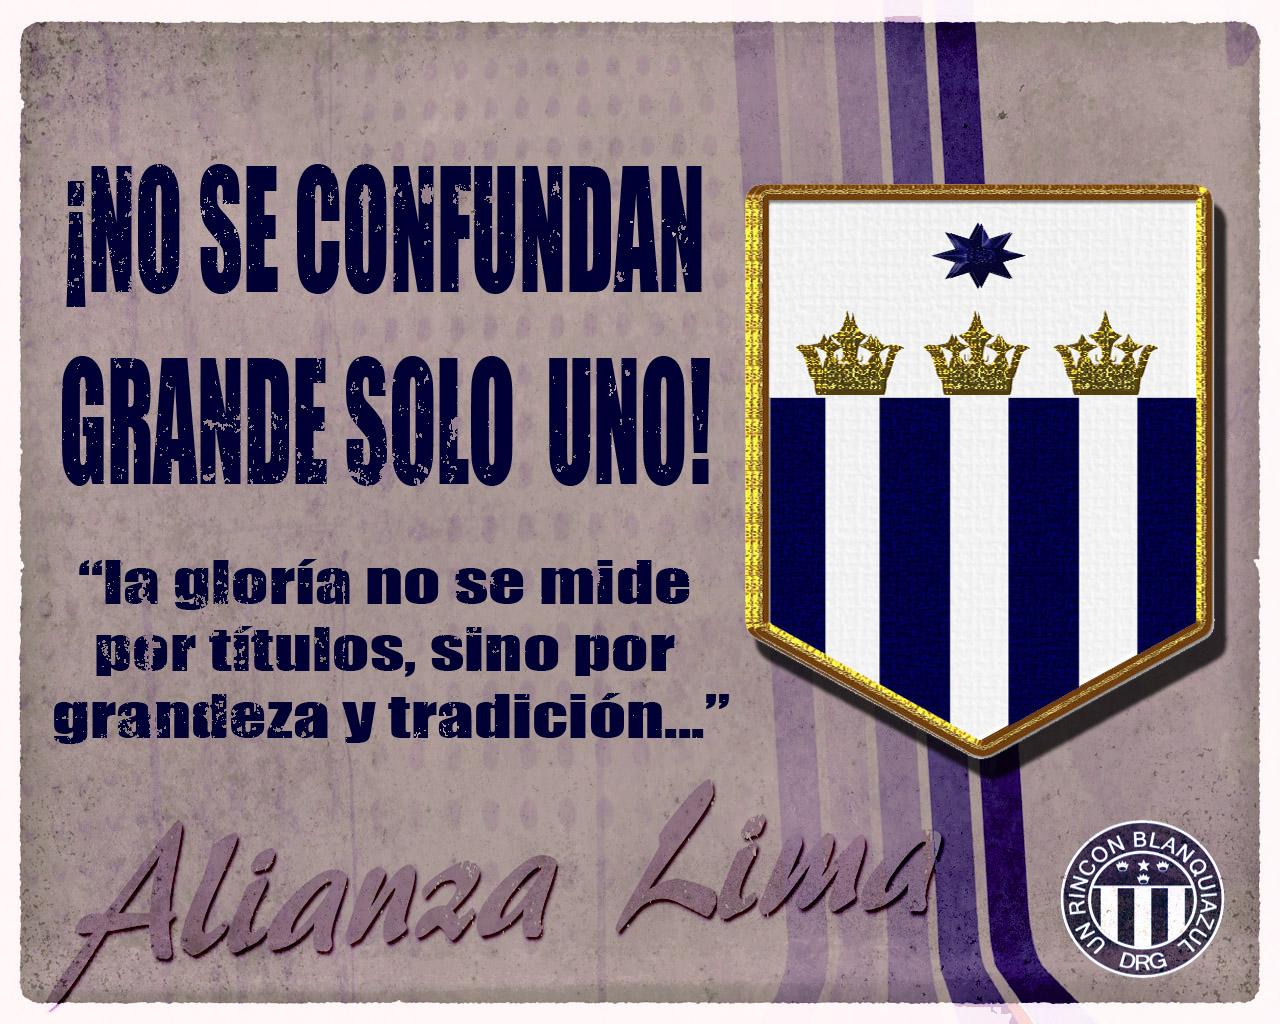 باشگاه فوتبال آلیانزا لیما (Club Alianza Lima)